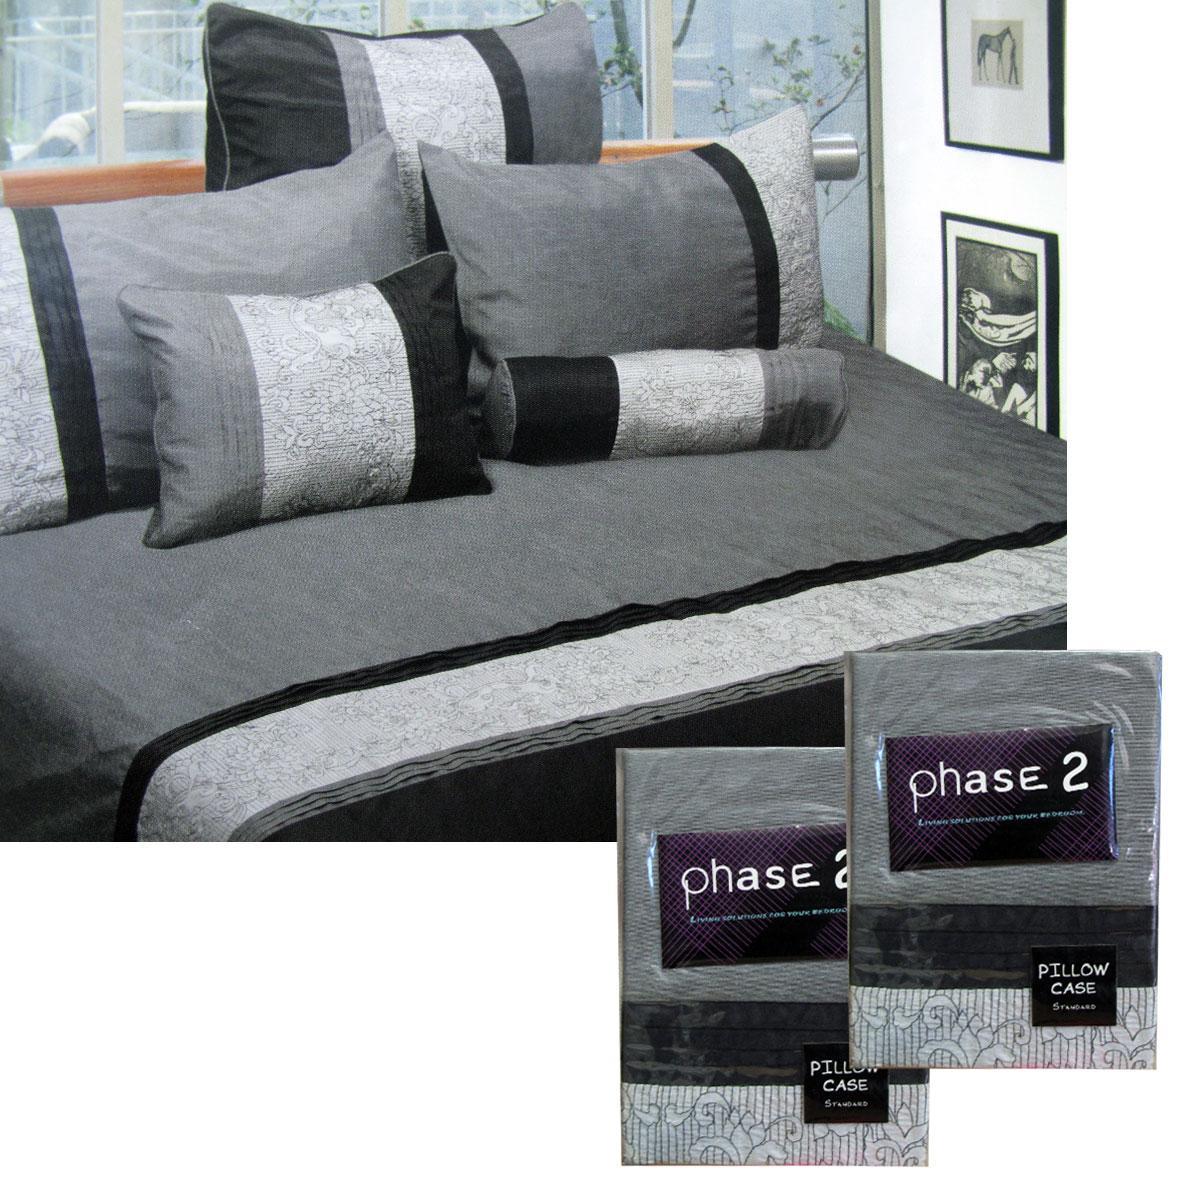 Phase 2 Pair of Manhattan Standard Pillowcases 48 x 73 cm